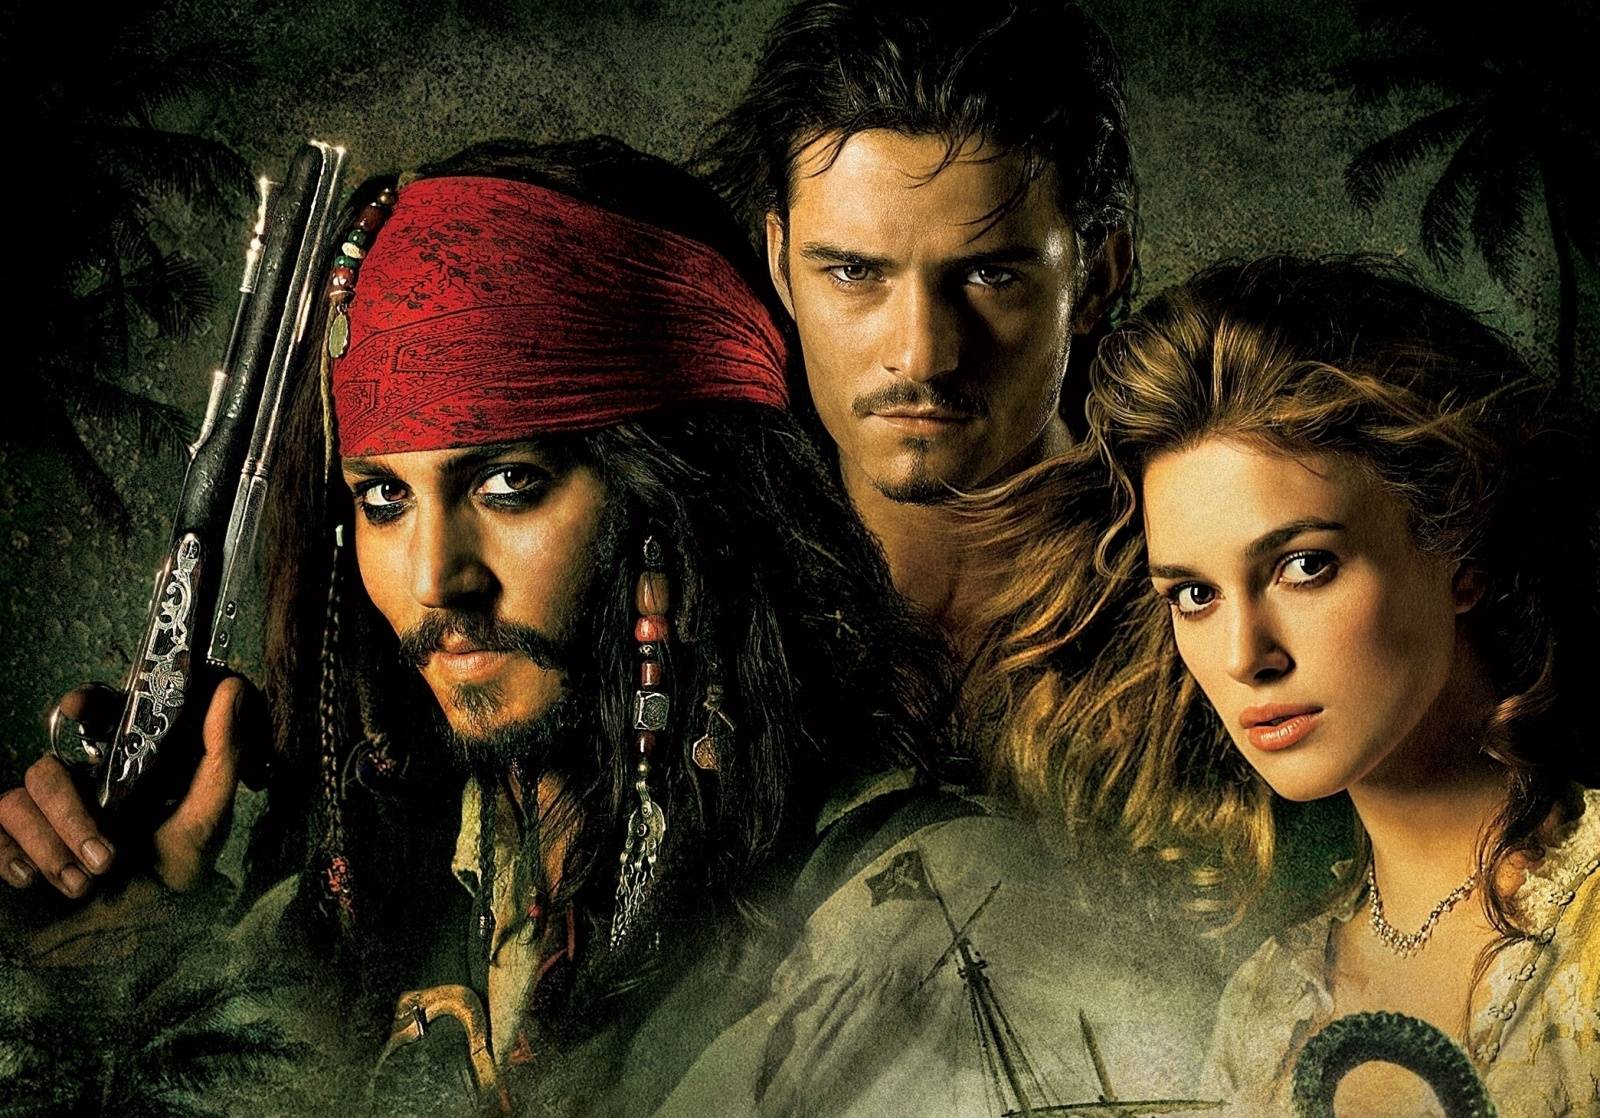 Piráti z Karibiku, Sherlock Holmes i Temný rytíř: TOP 7 nejzásadnějších soundtracků Hanse Zimmera